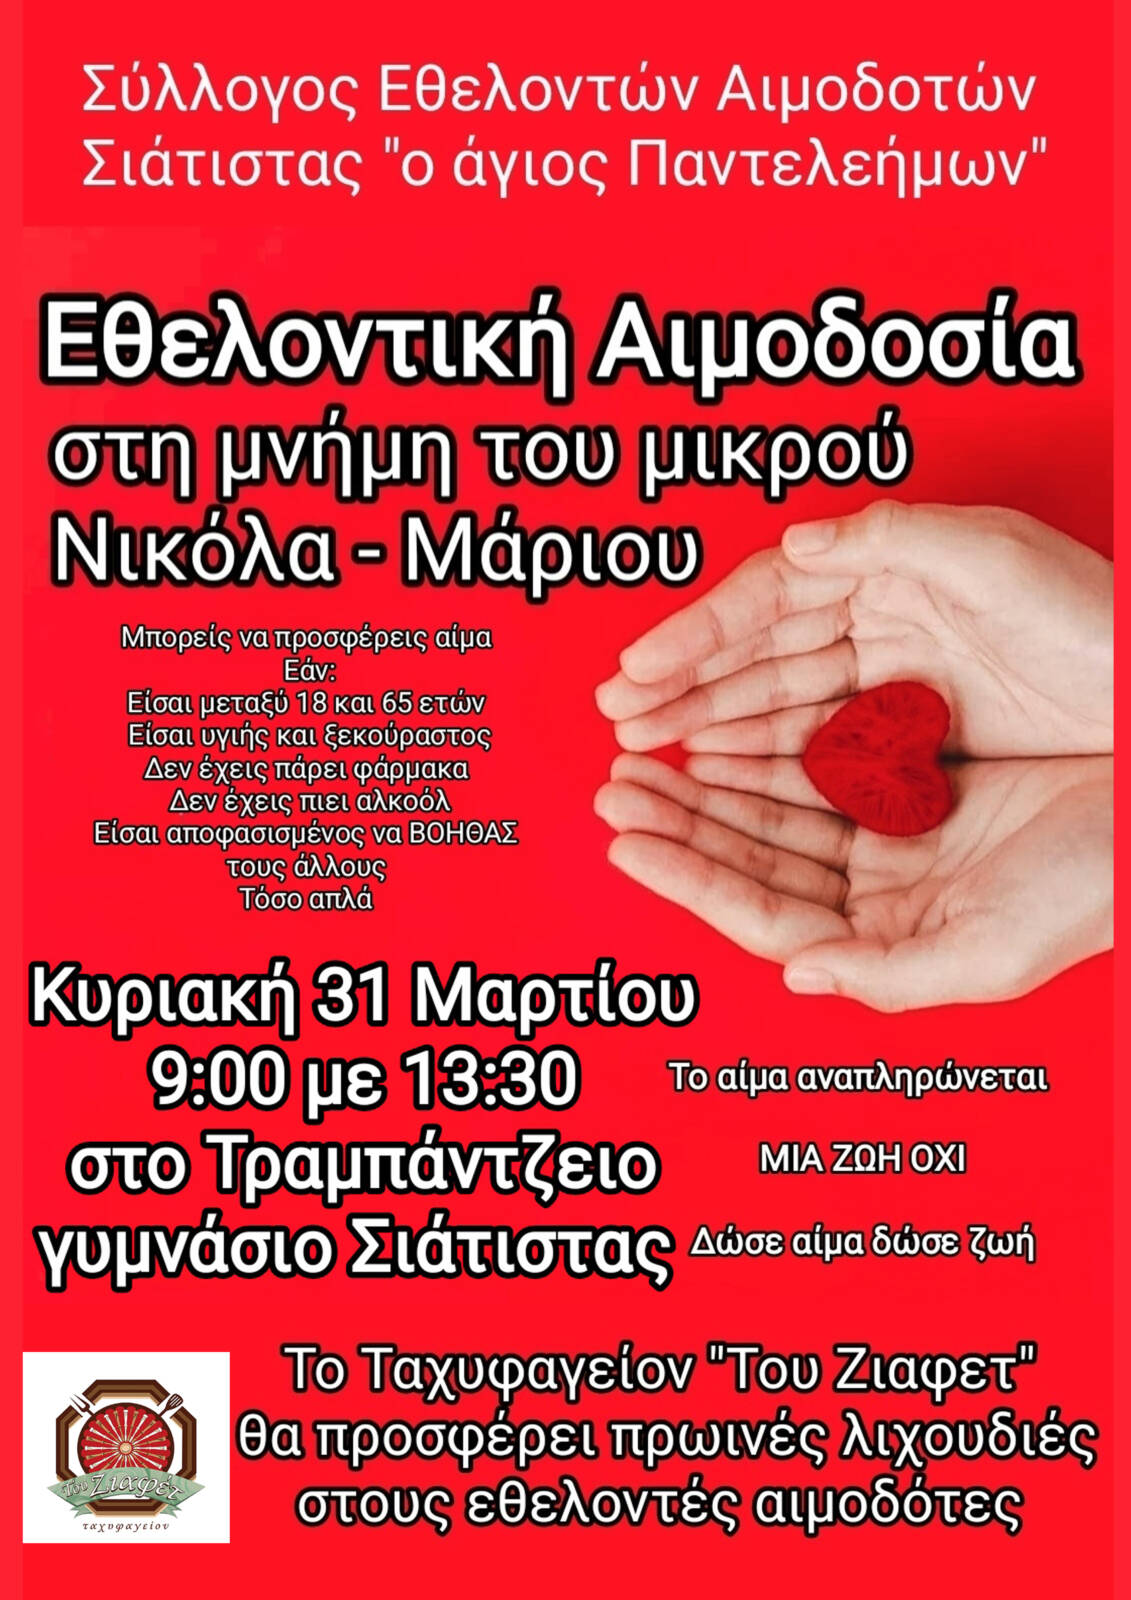 Εθελοντική Αιμοδοσία στη μνήμη του μικρού Νικόλα – Μάριου την Κυριακή 31 Μαρτίου από τον Αιμοδοτικό Σύλλογο Σιάτιστας